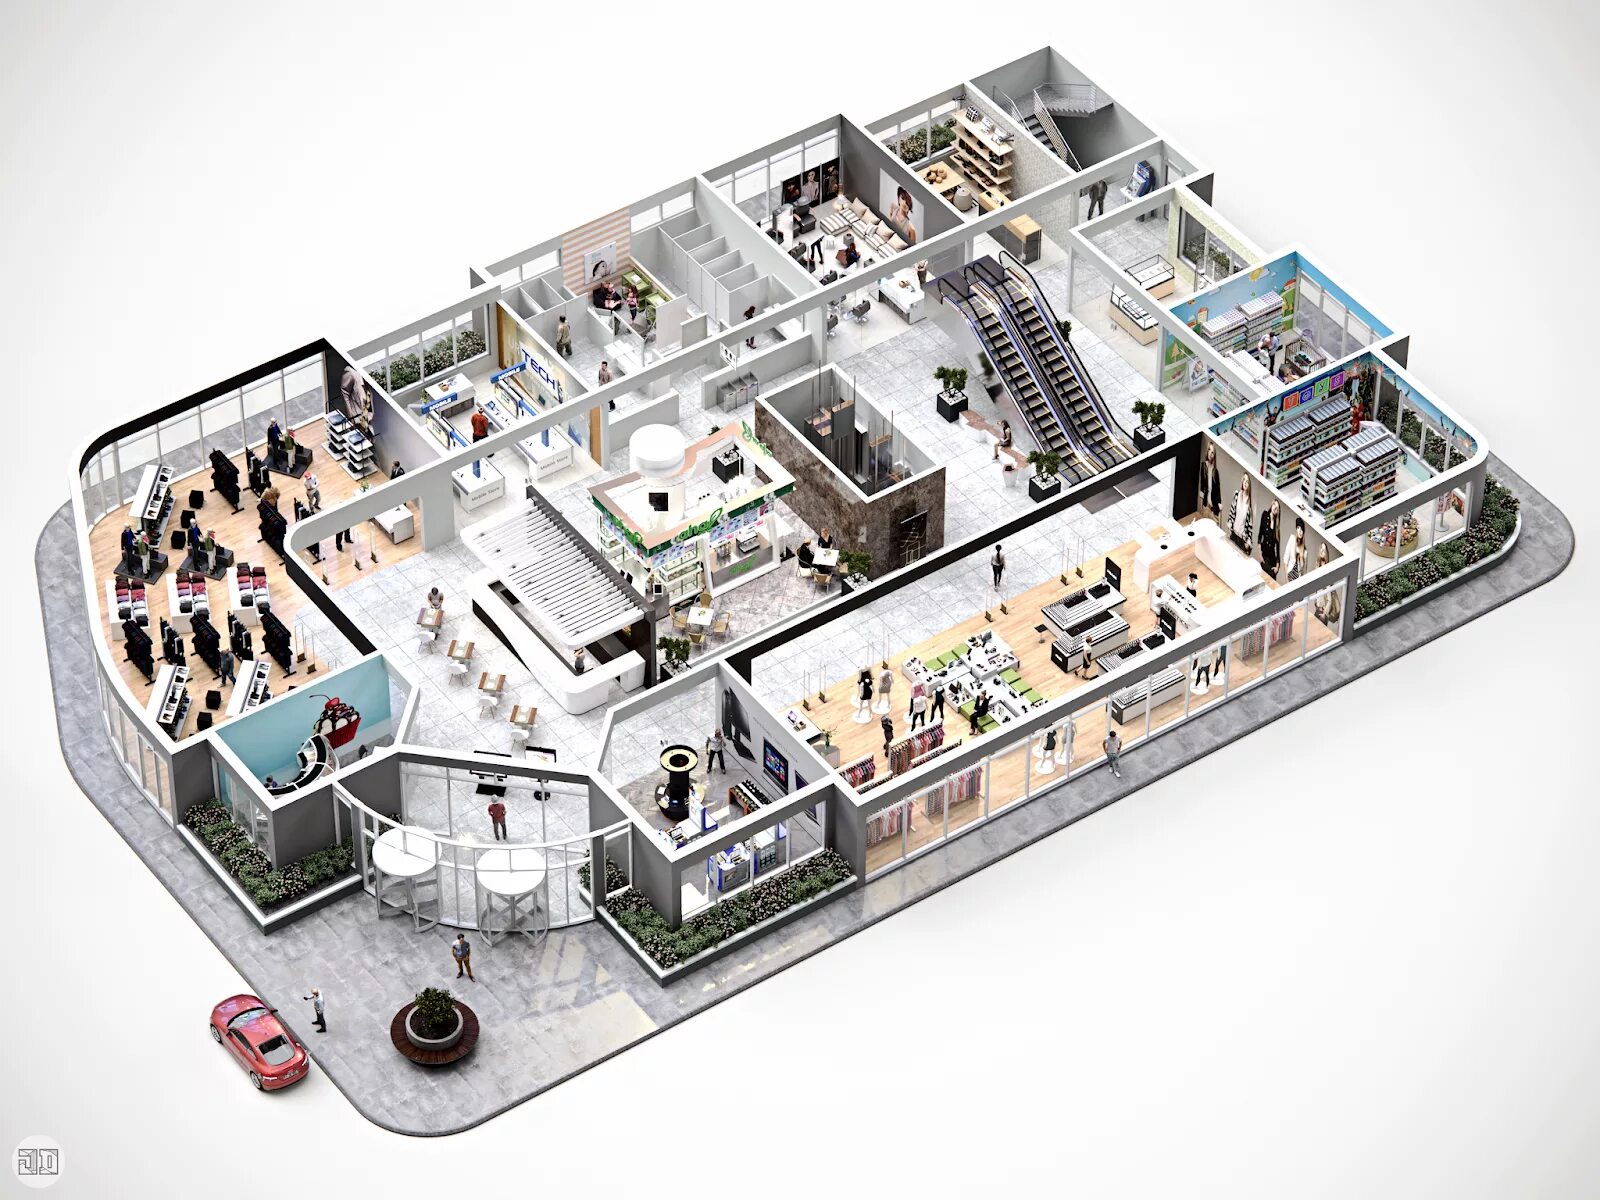 Макет помещения. Макет торгового центра. Интерактивный план здания. Трехмерная модель помещения. Производство торговый центр